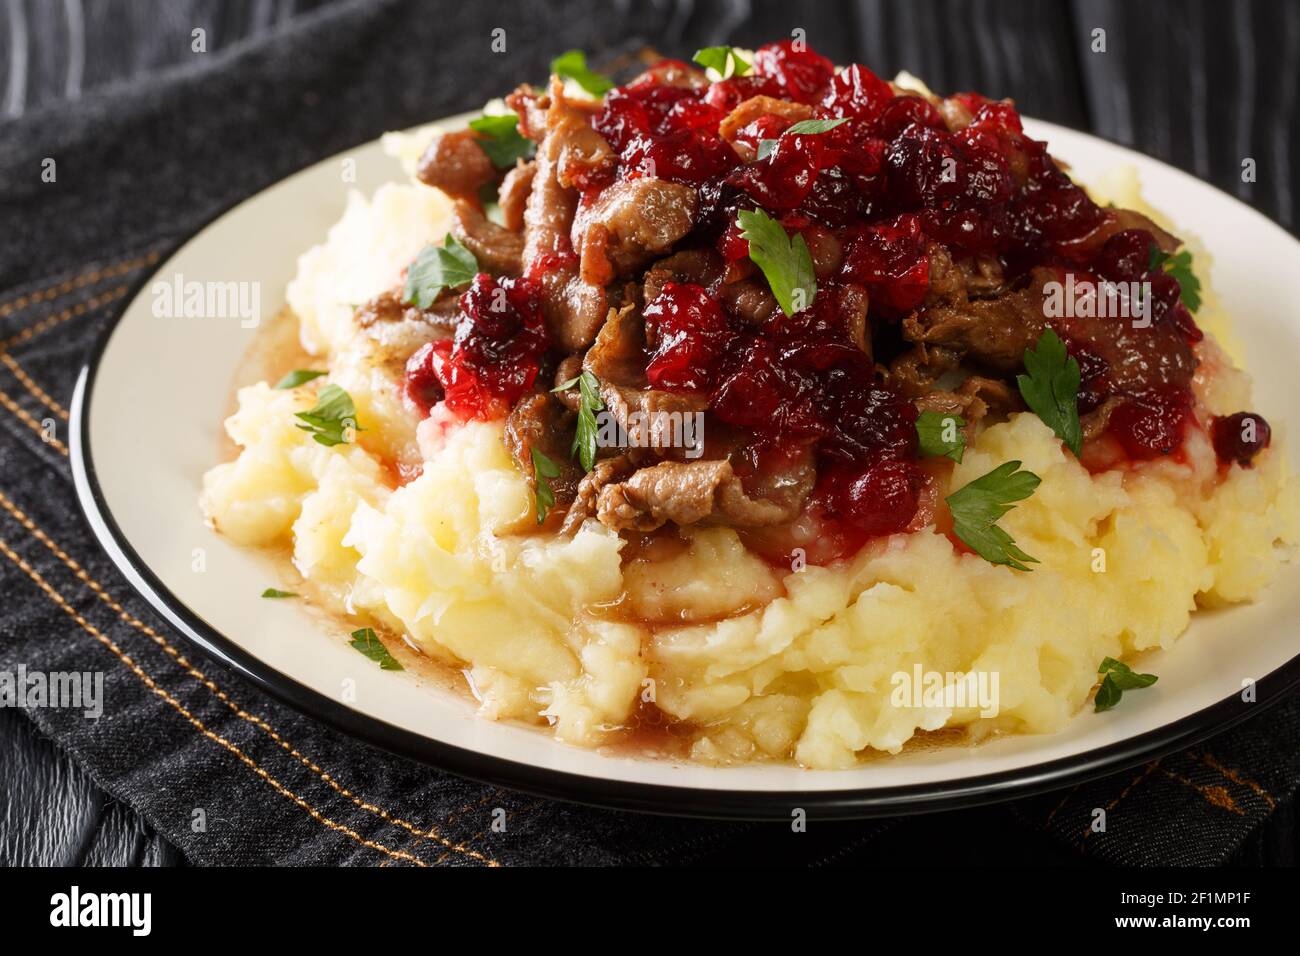 Nourriture de Laponie Poronkaristys venison avec purée de pommes de terre et sauce aux baies de lingonyre dans une assiette sur la table. Horizontale Banque D'Images